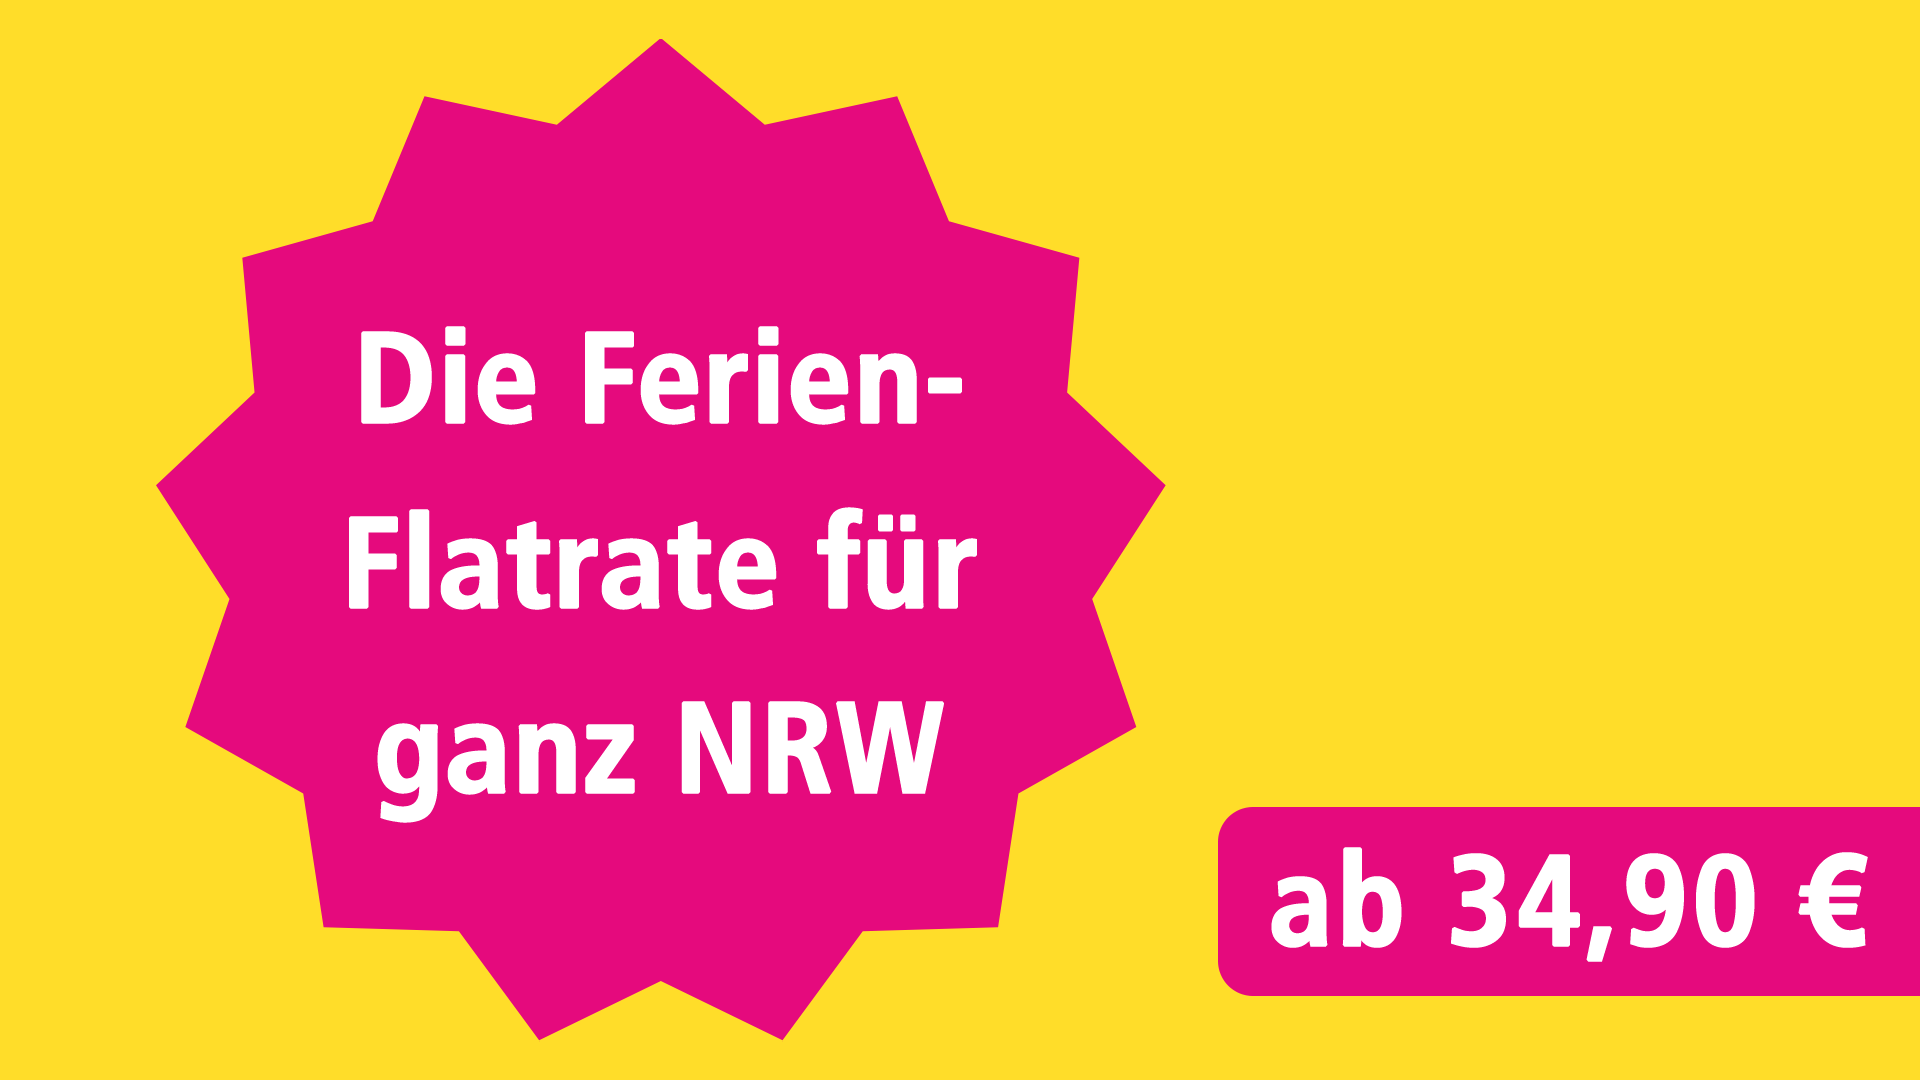 Die Ferien-Flatrate für ganz NRW ab 34,90 €